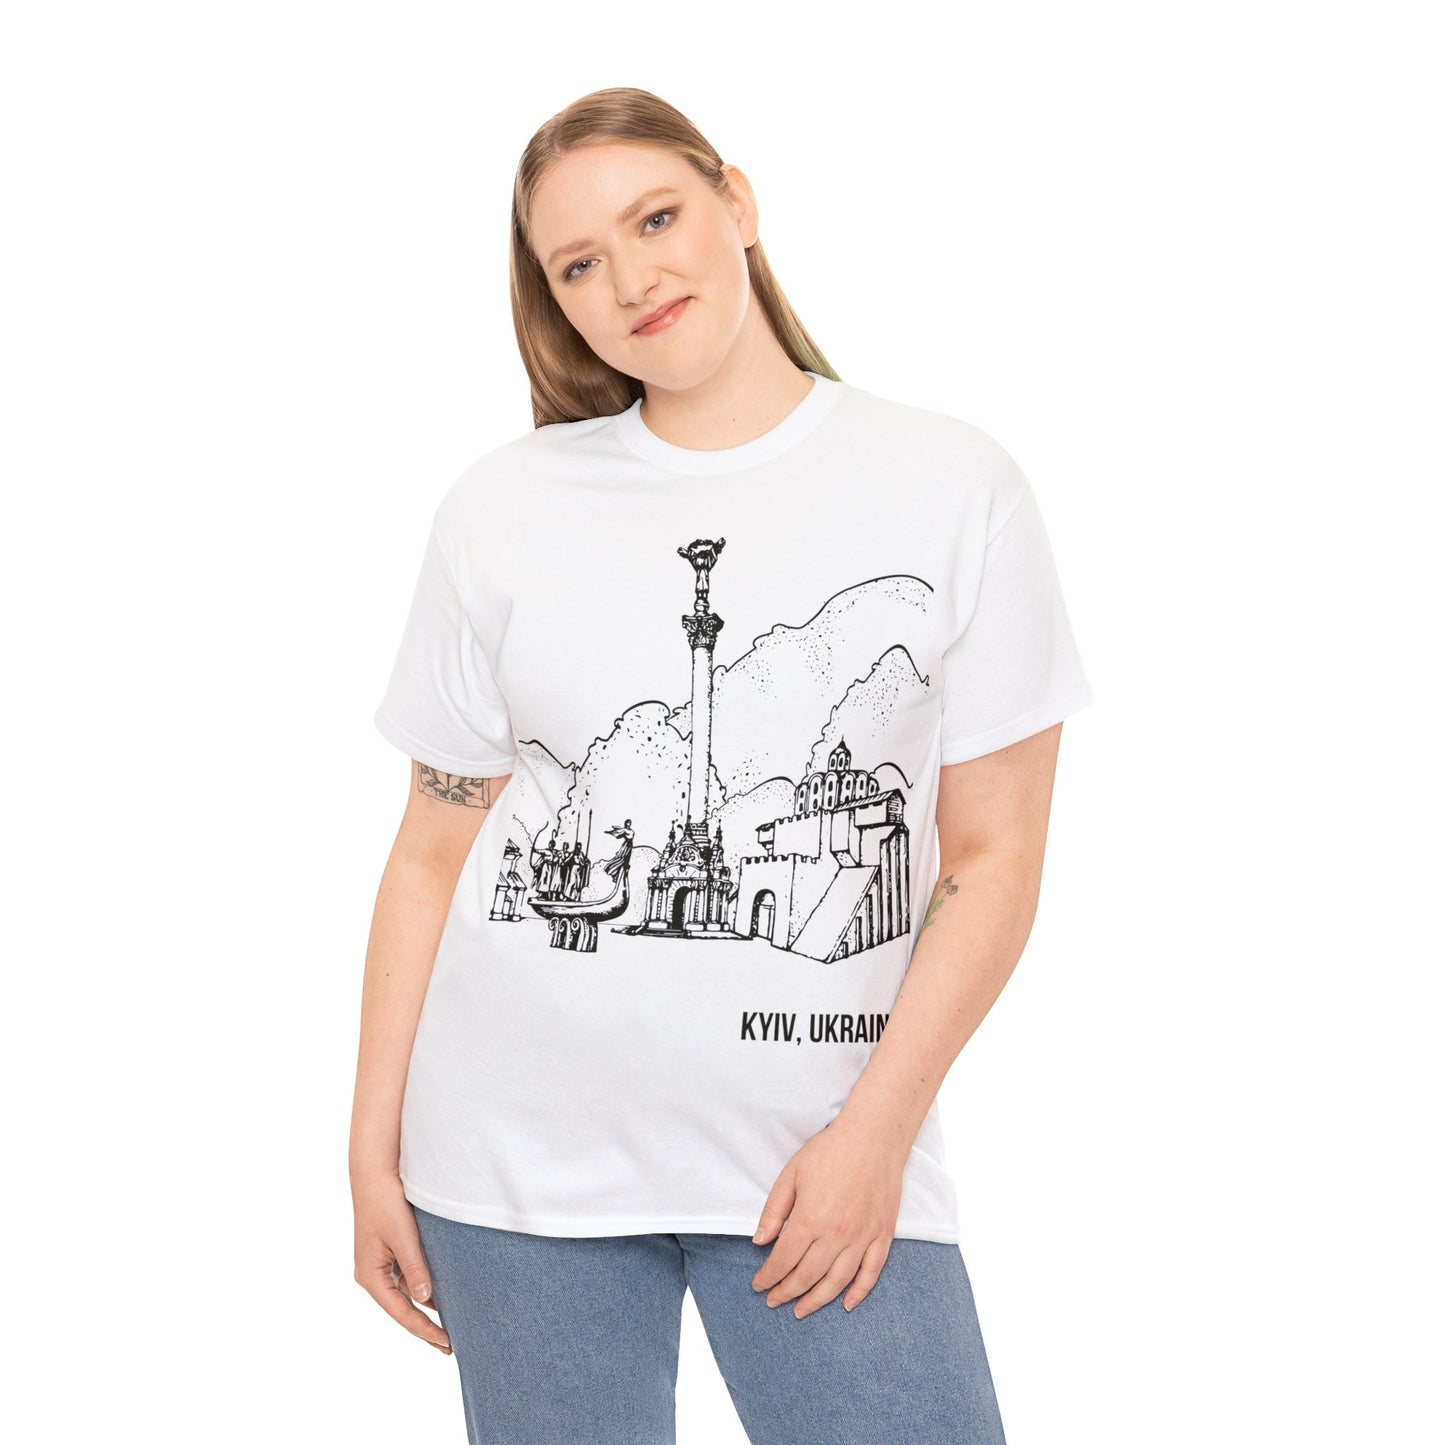 The Kyiv T-Shirt